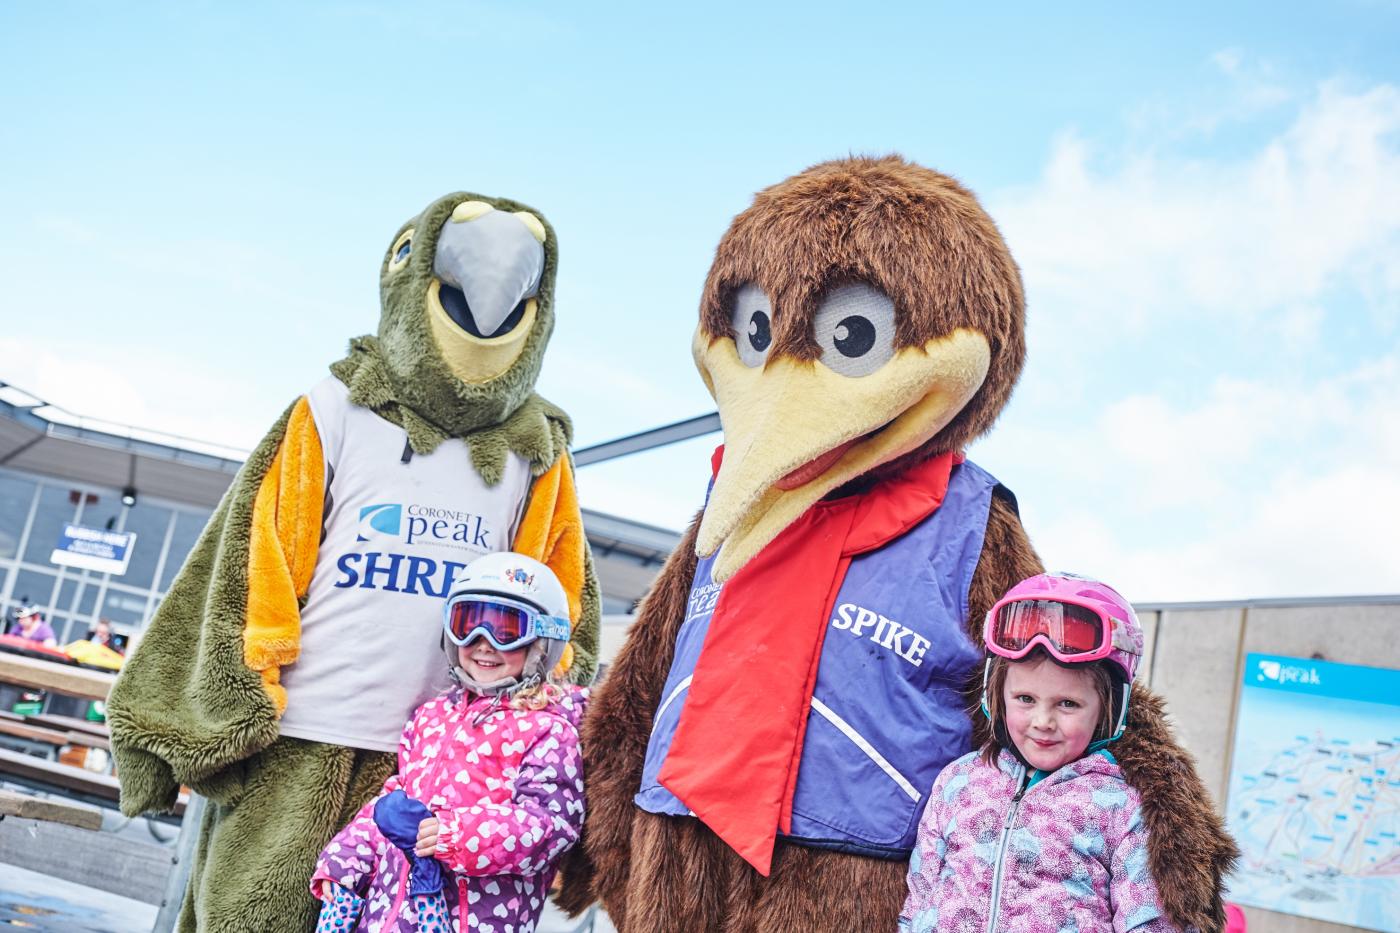 Shred & Spike Coronet Peak mascots